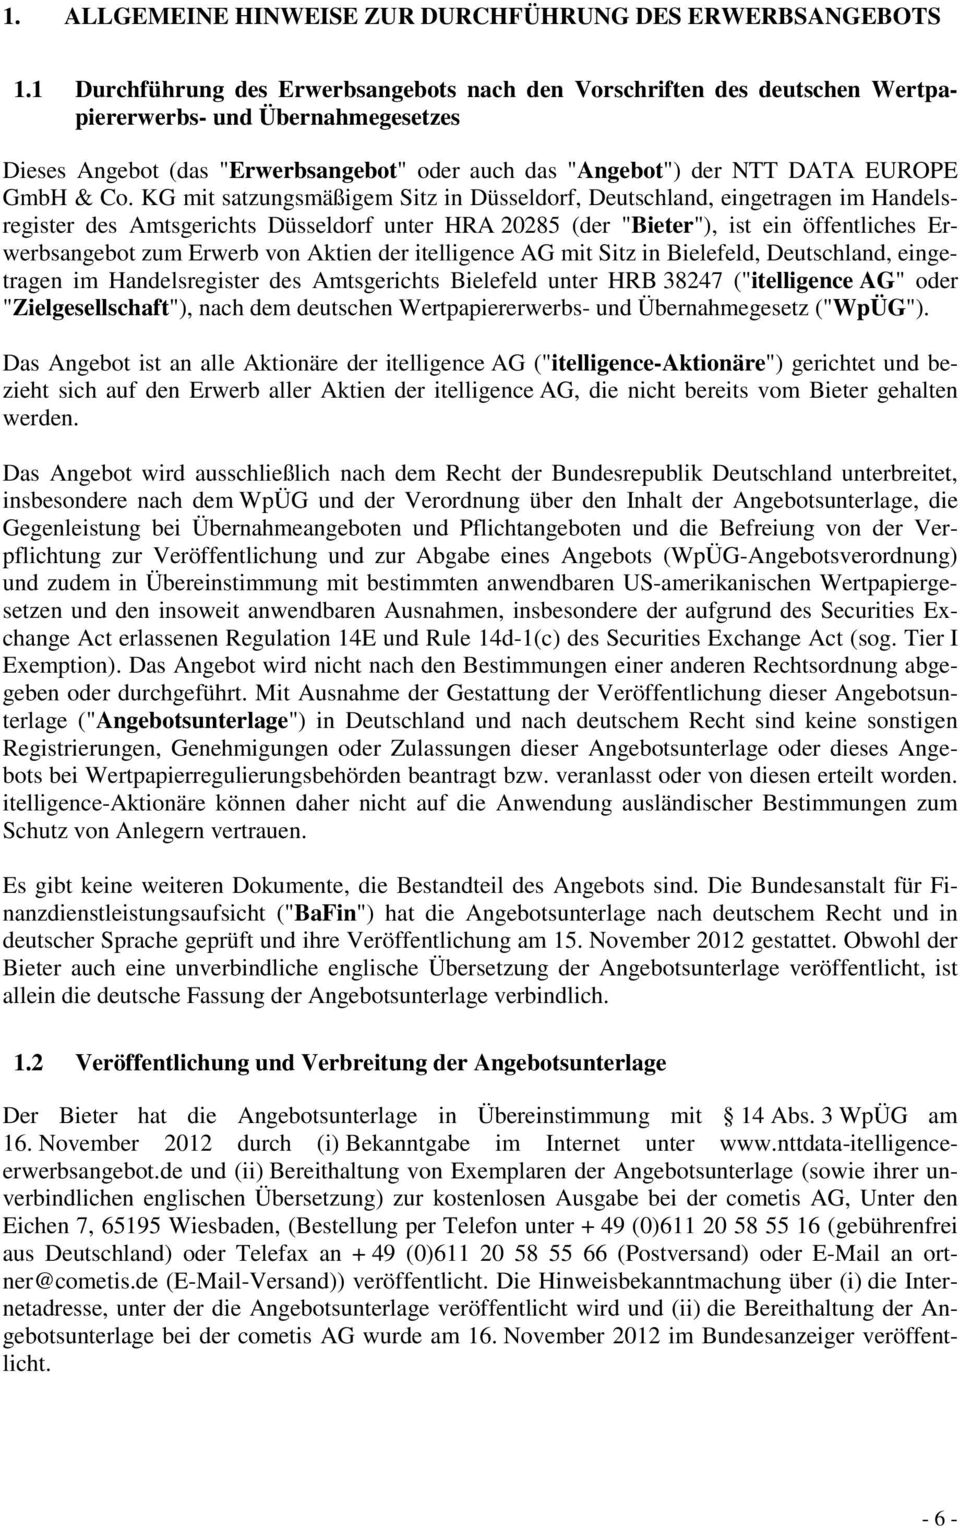 & Co. KG mit satzungsmäßigem Sitz in Düsseldorf, Deutschland, eingetragen im Handelsregister des Amtsgerichts Düsseldorf unter HRA 20285 (der "Bieter"), ist ein öffentliches Erwerbsangebot zum Erwerb